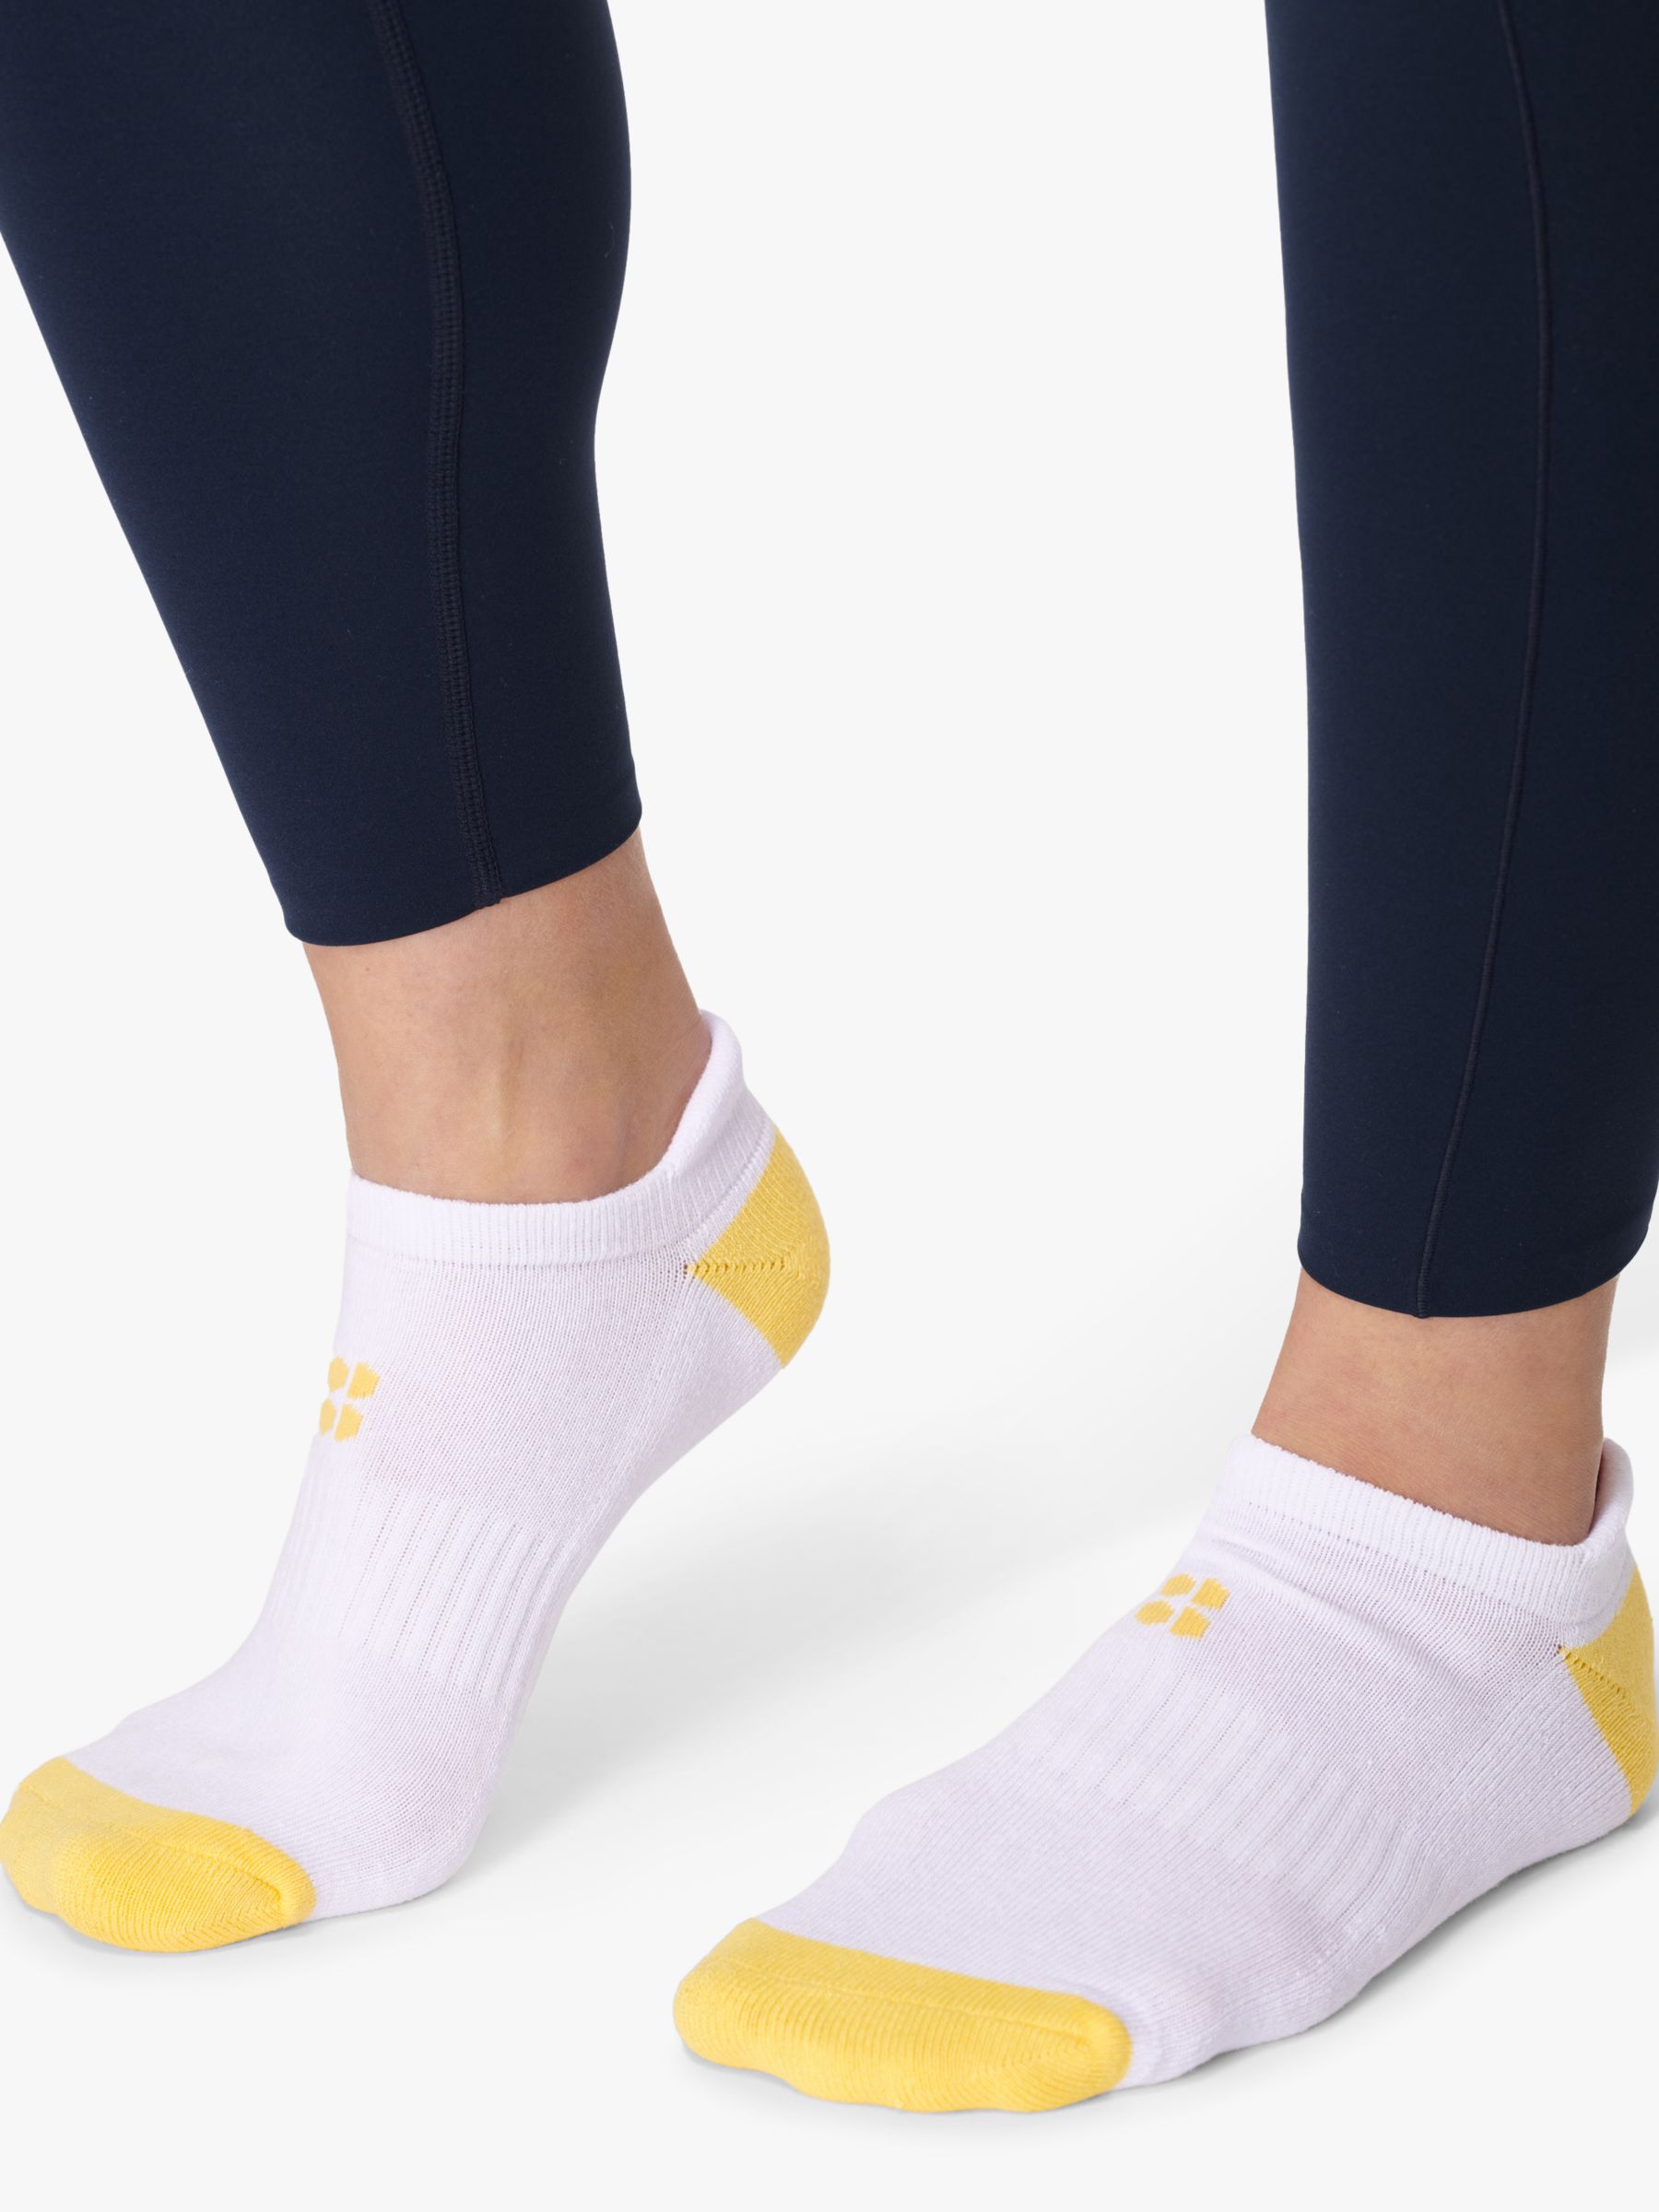 Sweaty Betty Workout Trainer Socks, Pack of 3, Riviera Yellow